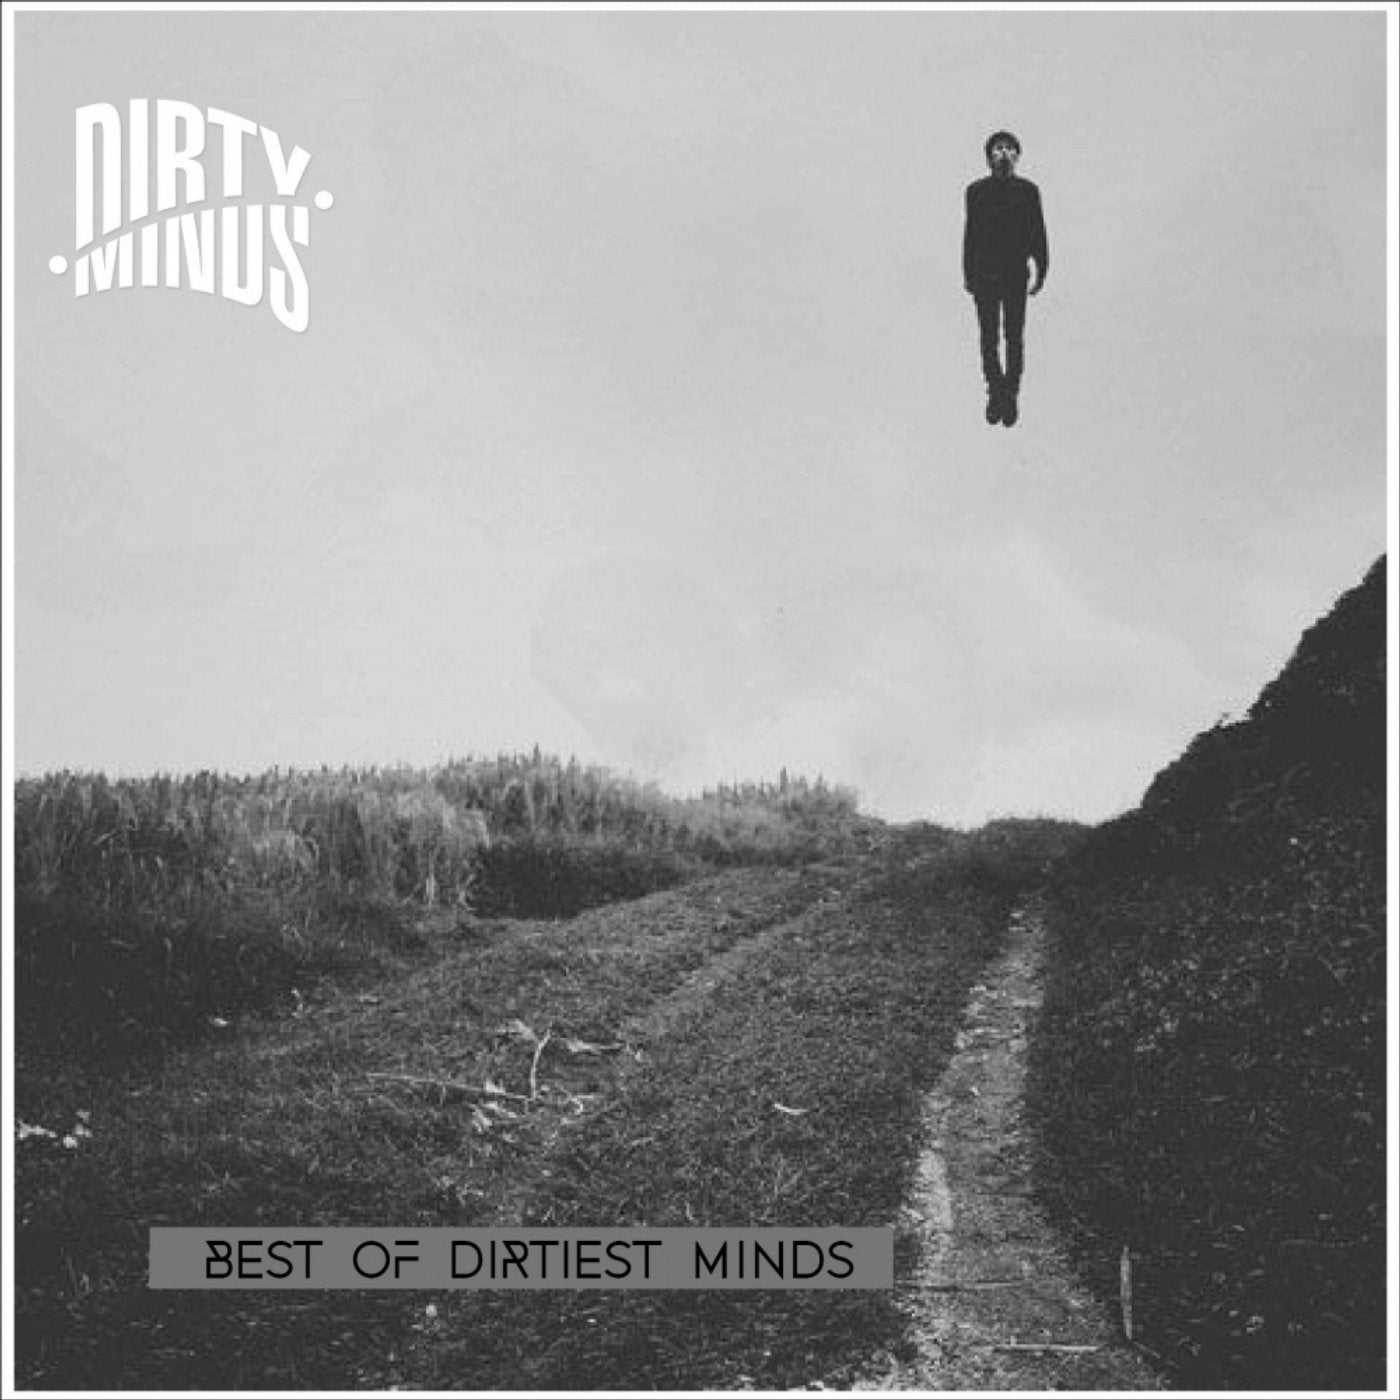 Best Of Dirtiest Minds, Vol. 2